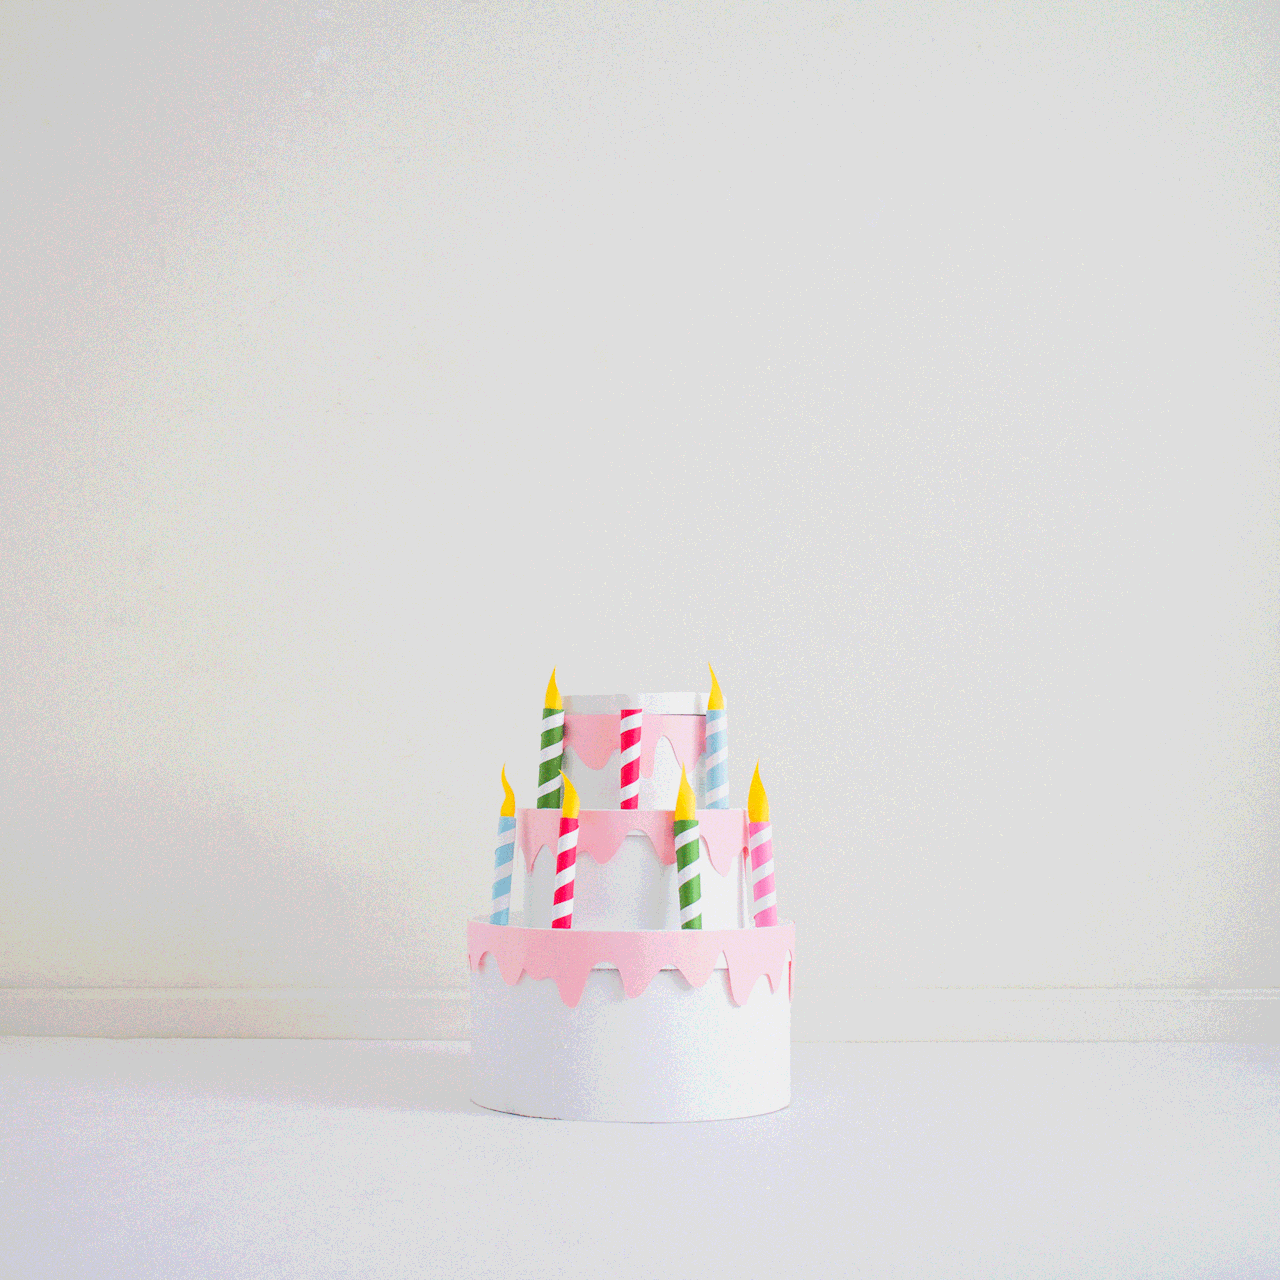 princess cheeto — It's my birthday. I DO WHAT I WANT.